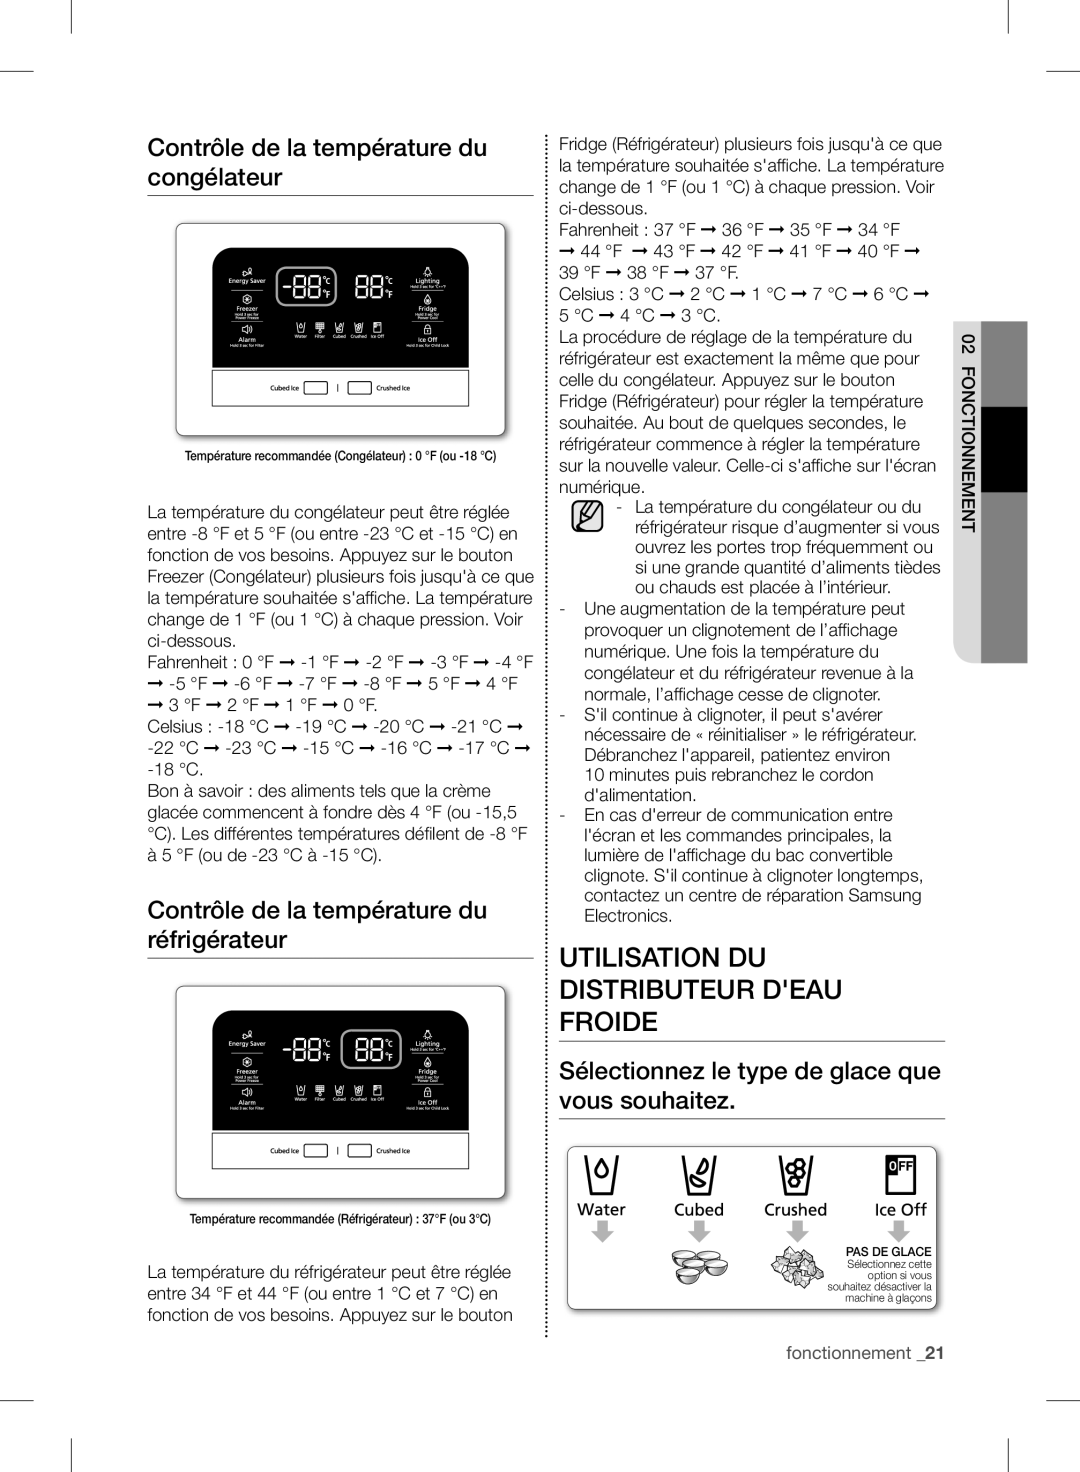 Samsung RF24FSEDBSR Utilisation Du Distributeur Deau Froide, Contrôle de la température du congélateur, fonctionnement _21 